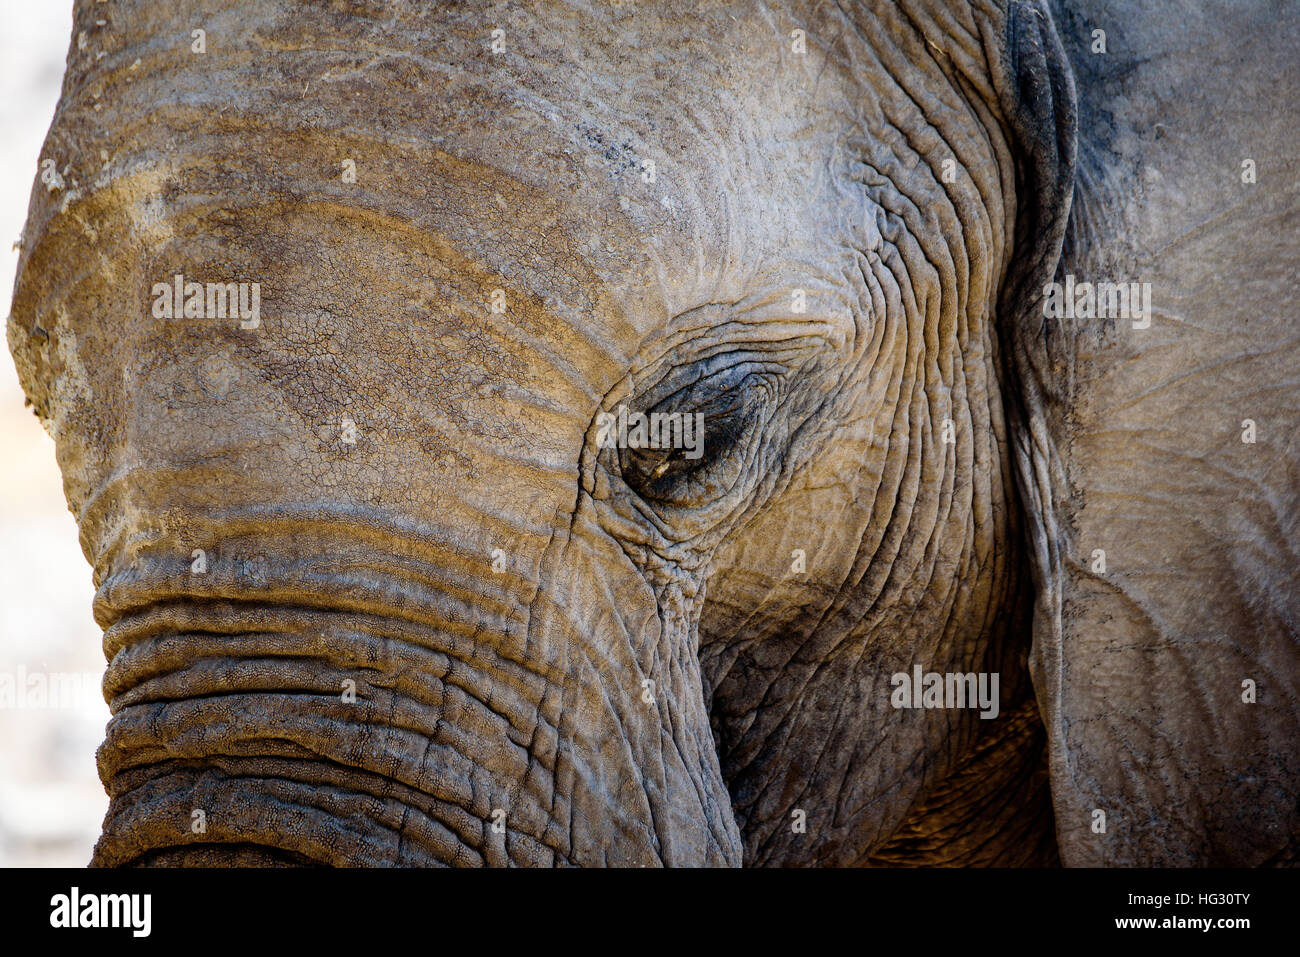 Nahaufnahme des Auges eines afrikanischen Elefanten Stockfoto